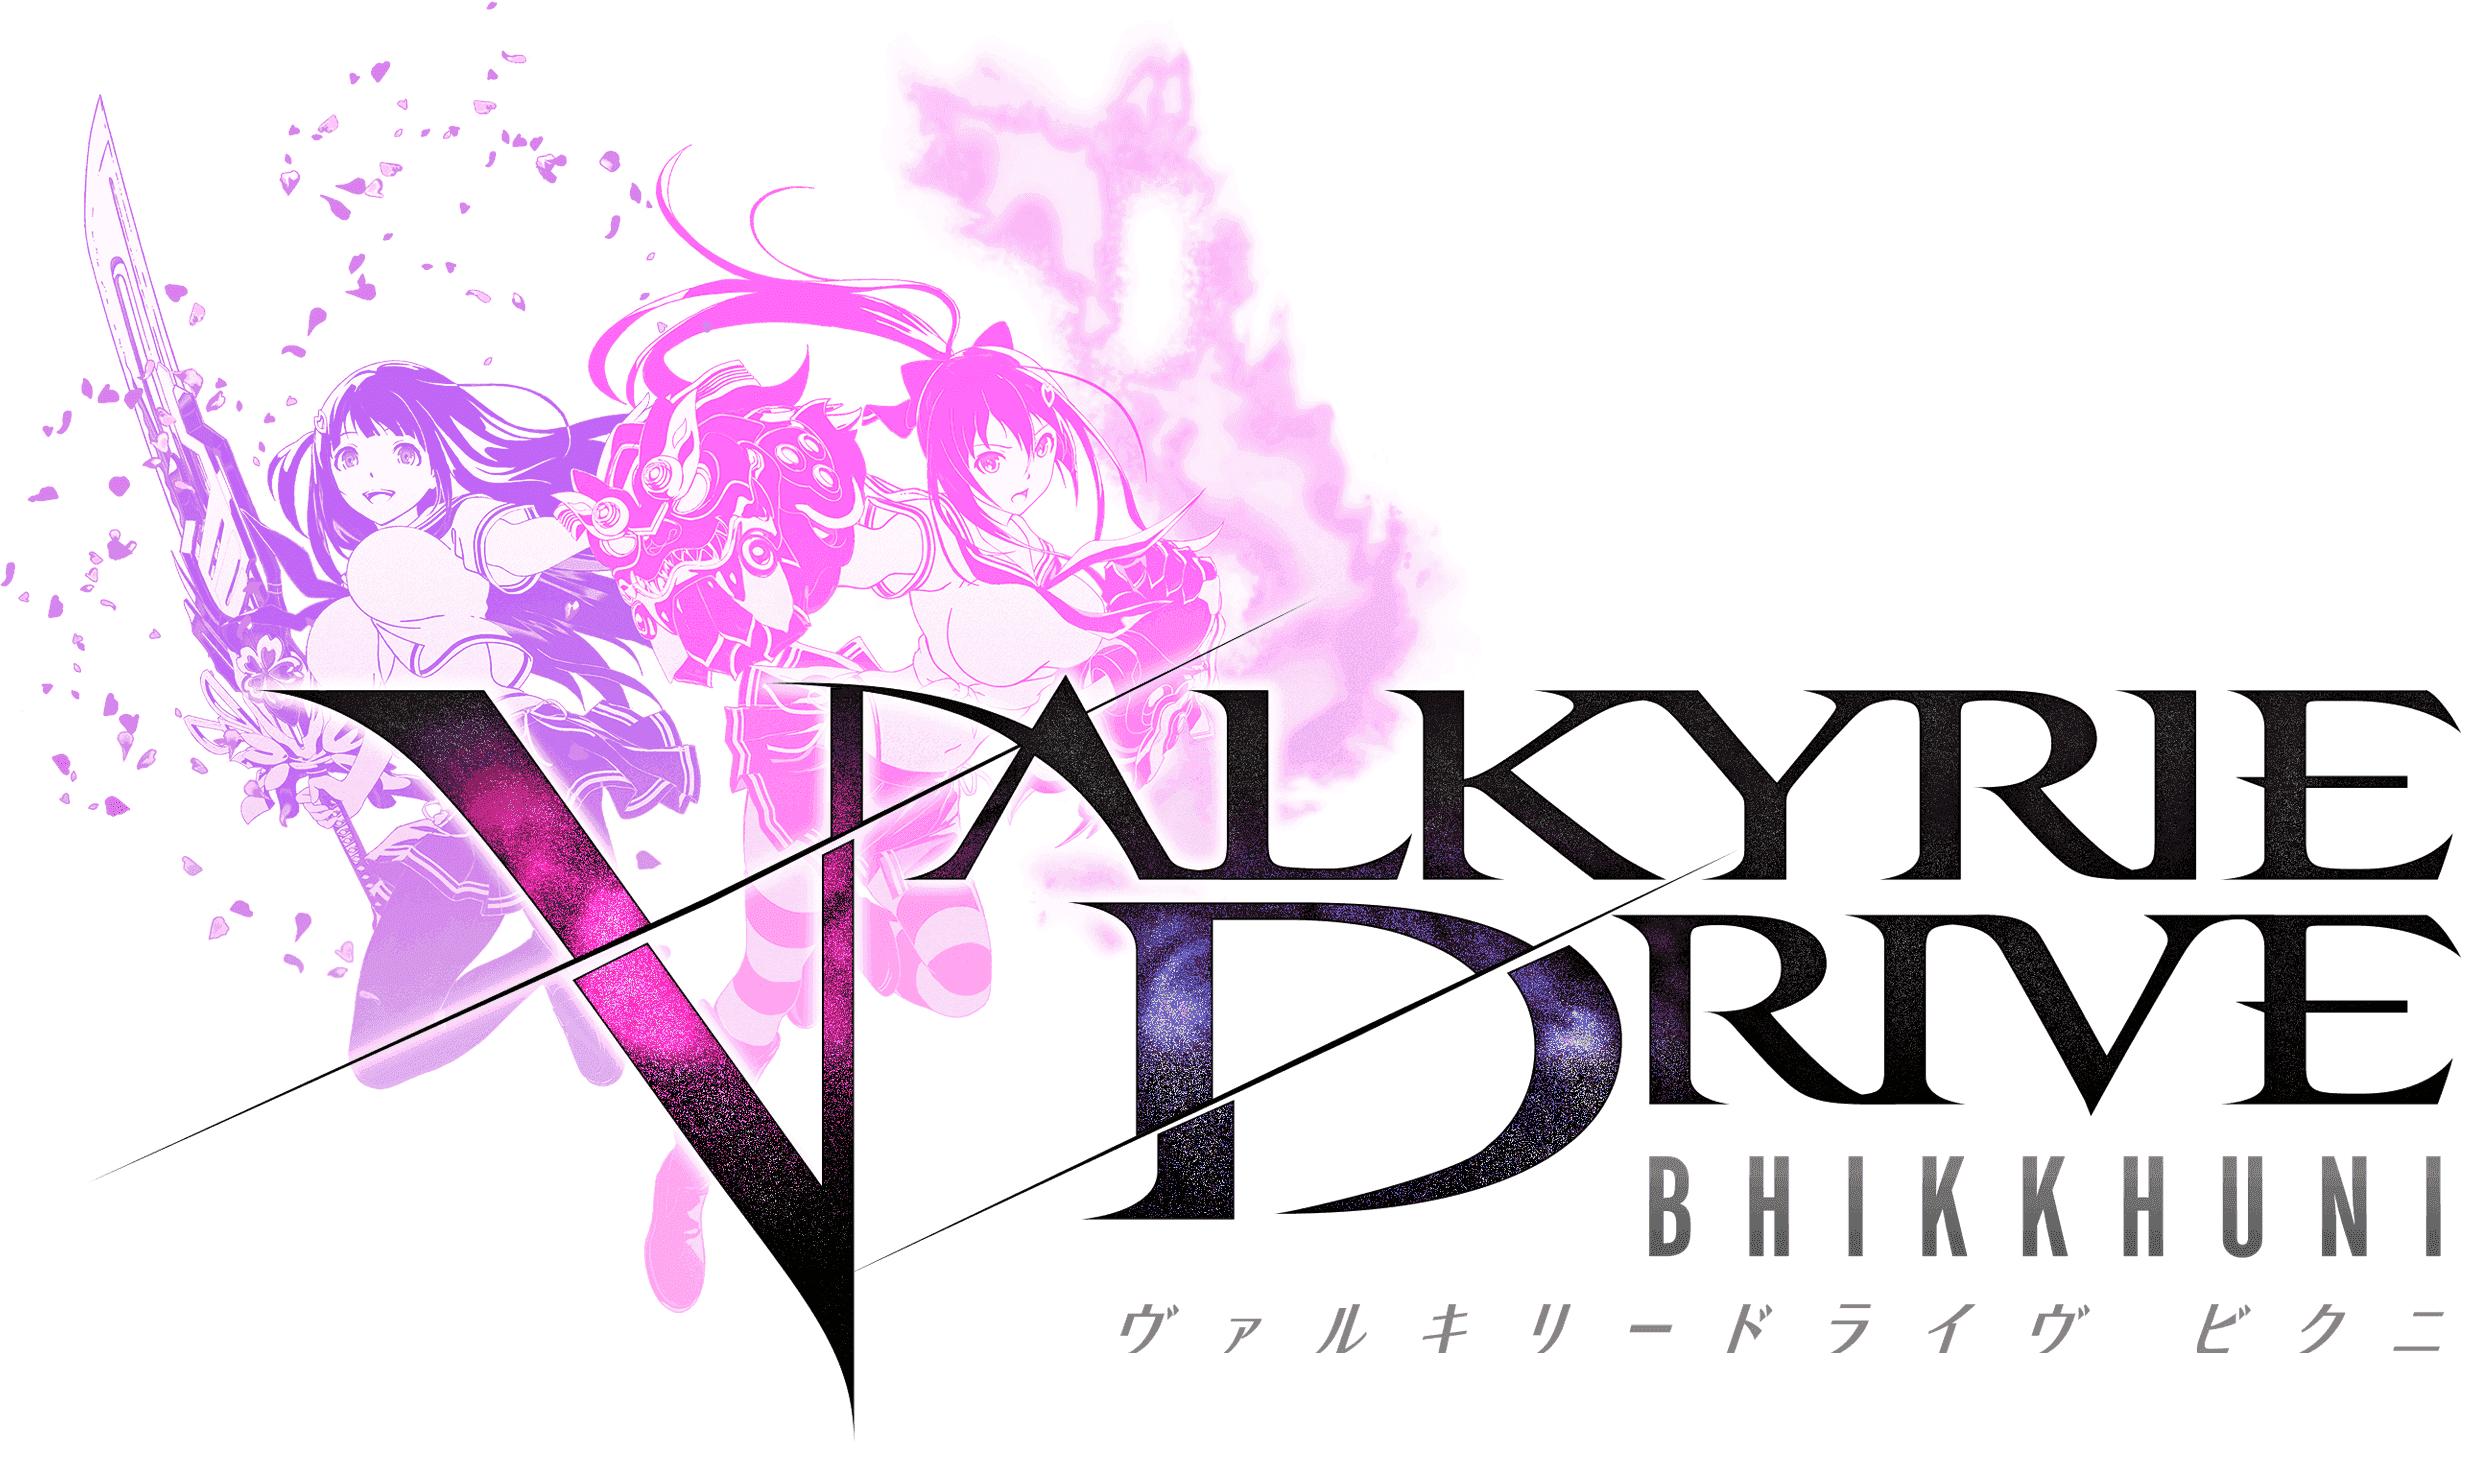 Elenco do novo anime Valkyrie Drive - Mermaid - Noticias Anime United